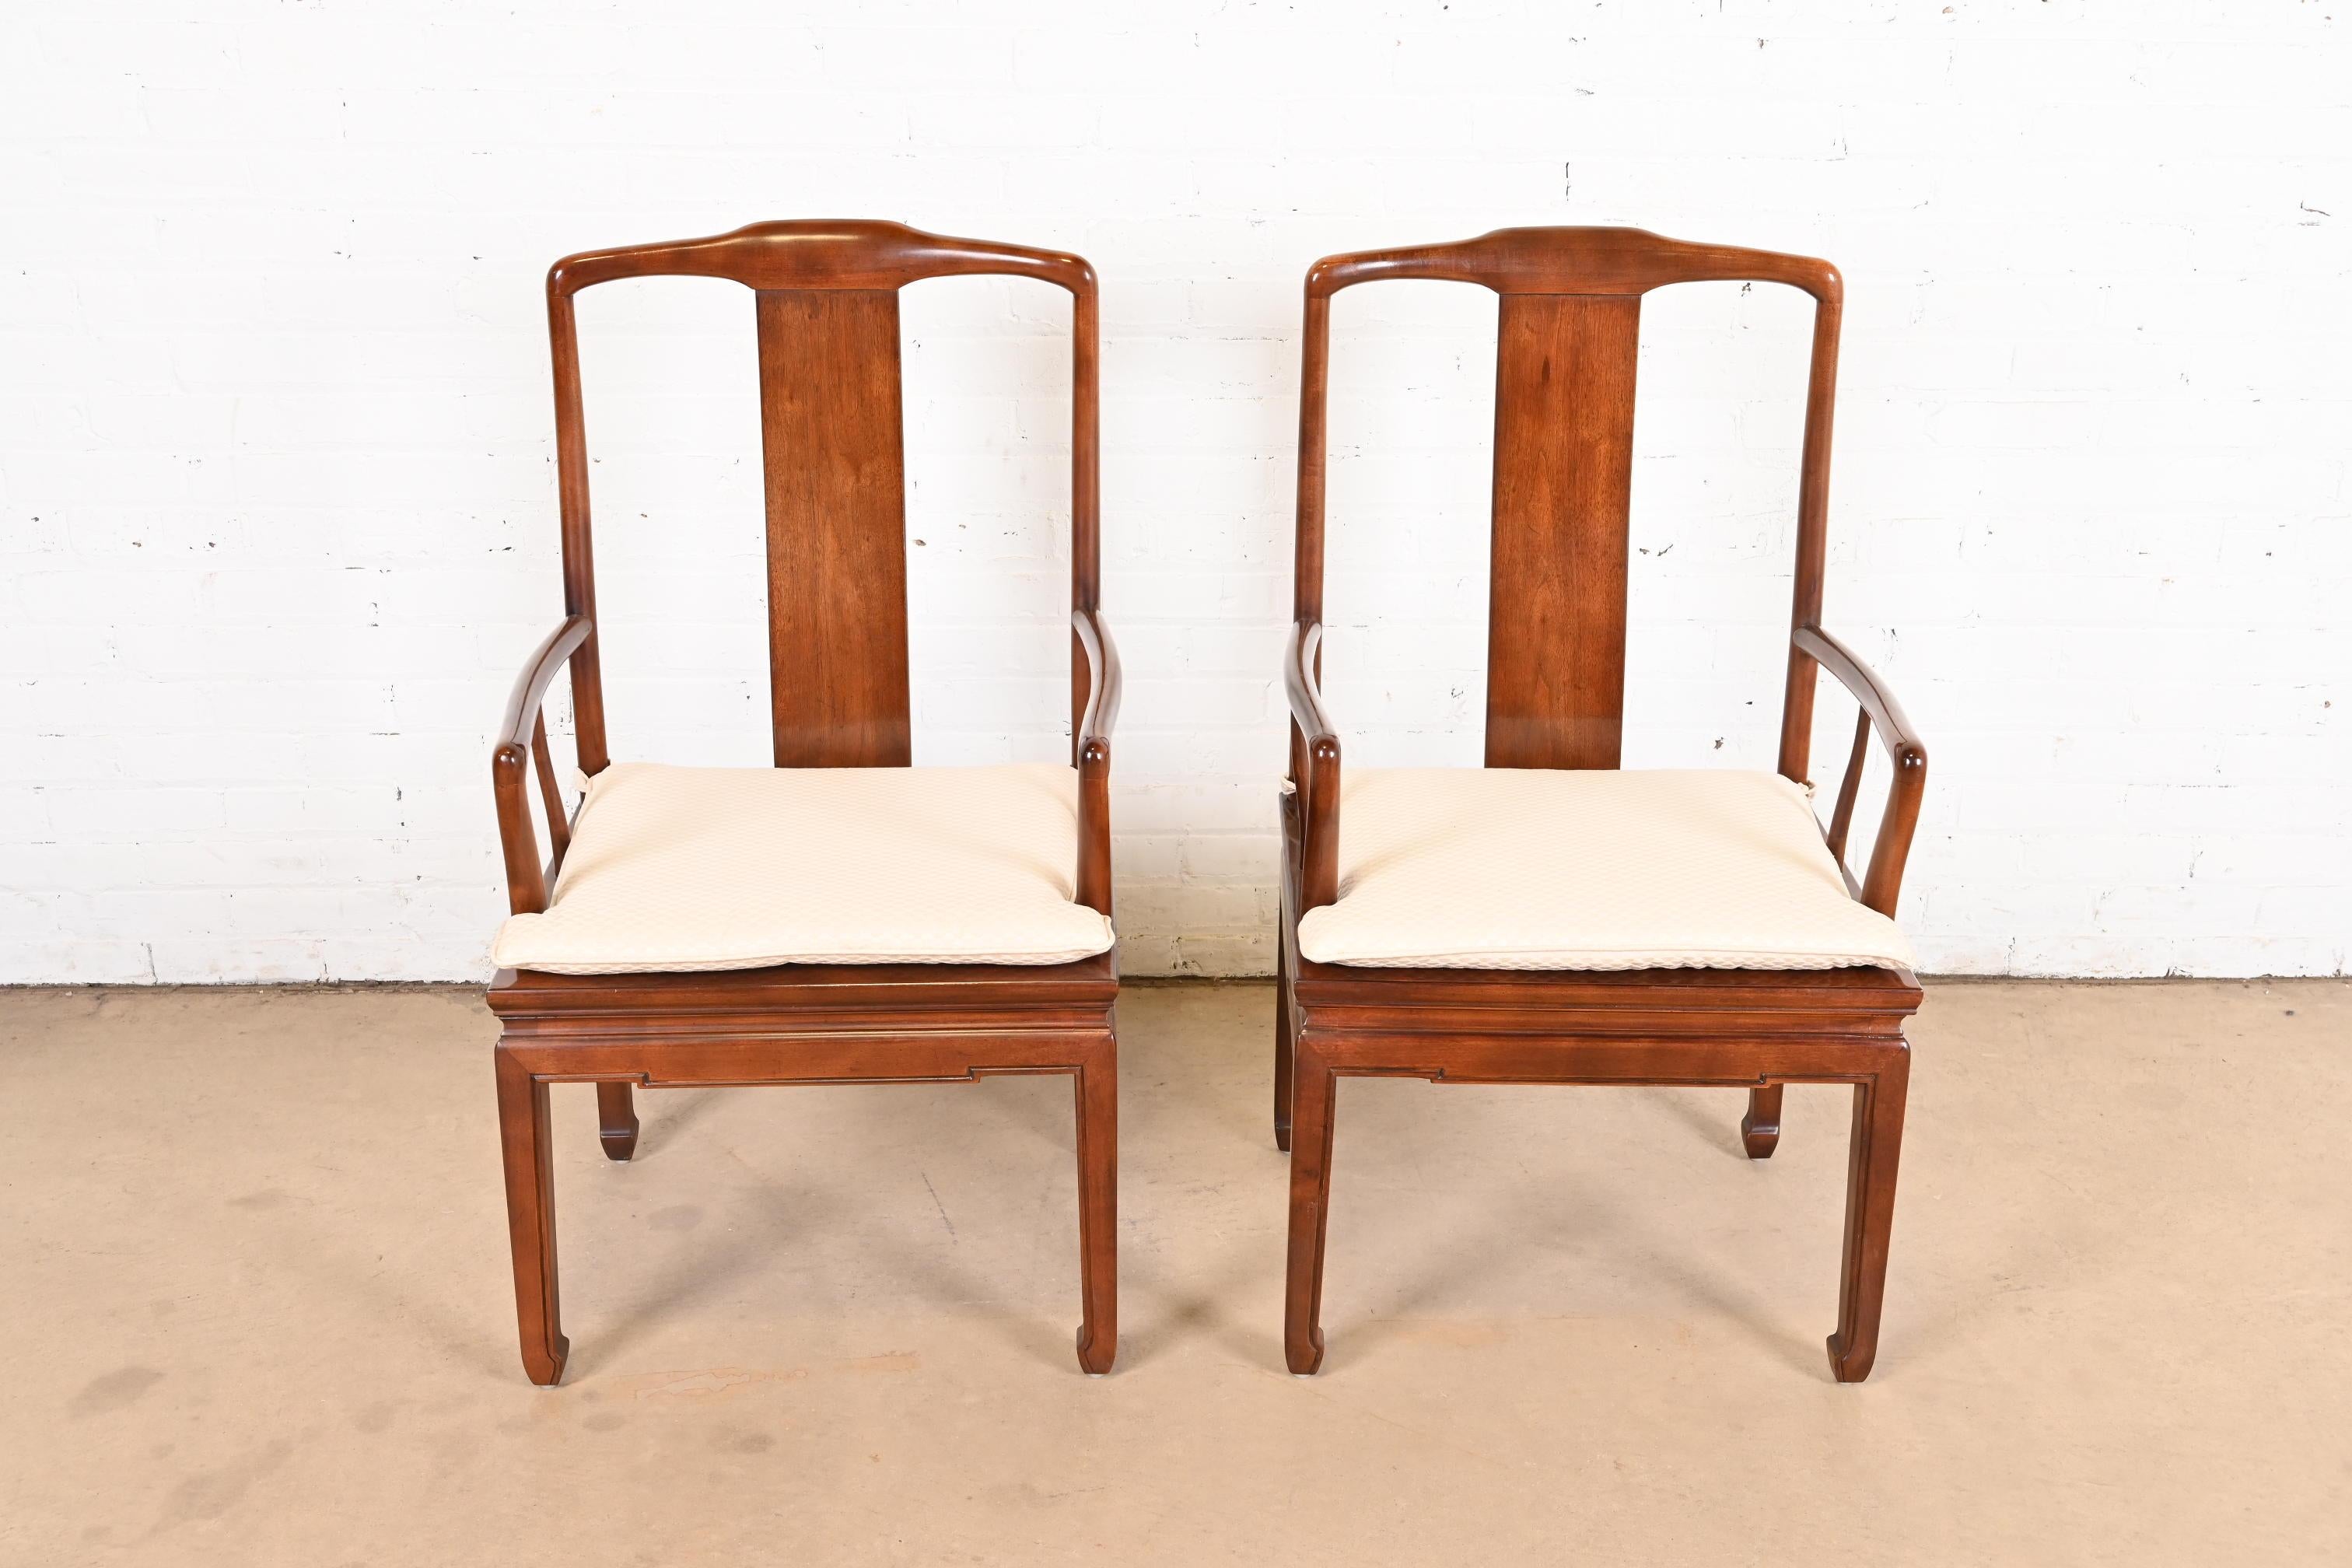 Un precioso par de sillones de comedor de estilo Chinoiserie Hollywood Regency moderno de mediados de siglo

Por Henredon

EE.UU., alrededor de 1970

Armazones de caoba maciza tallada, con asientos de caña y cojines tapizados.

Medidas: 22,5